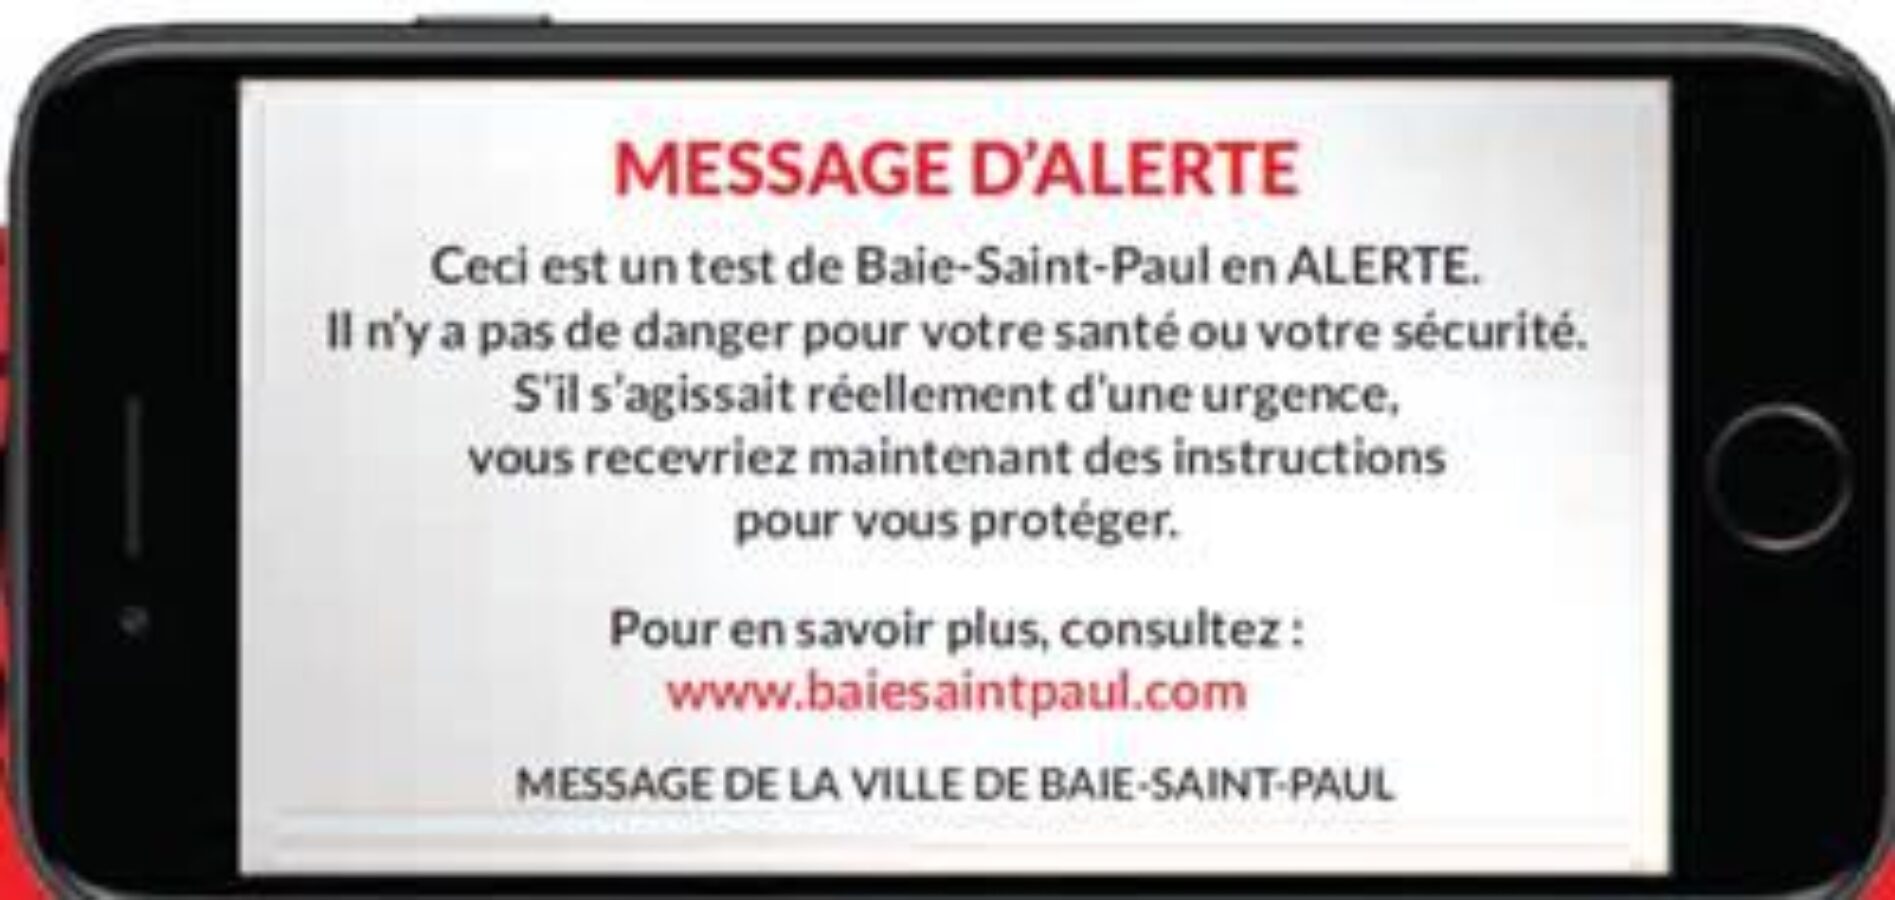 Baie-St-Paul en alerte!!